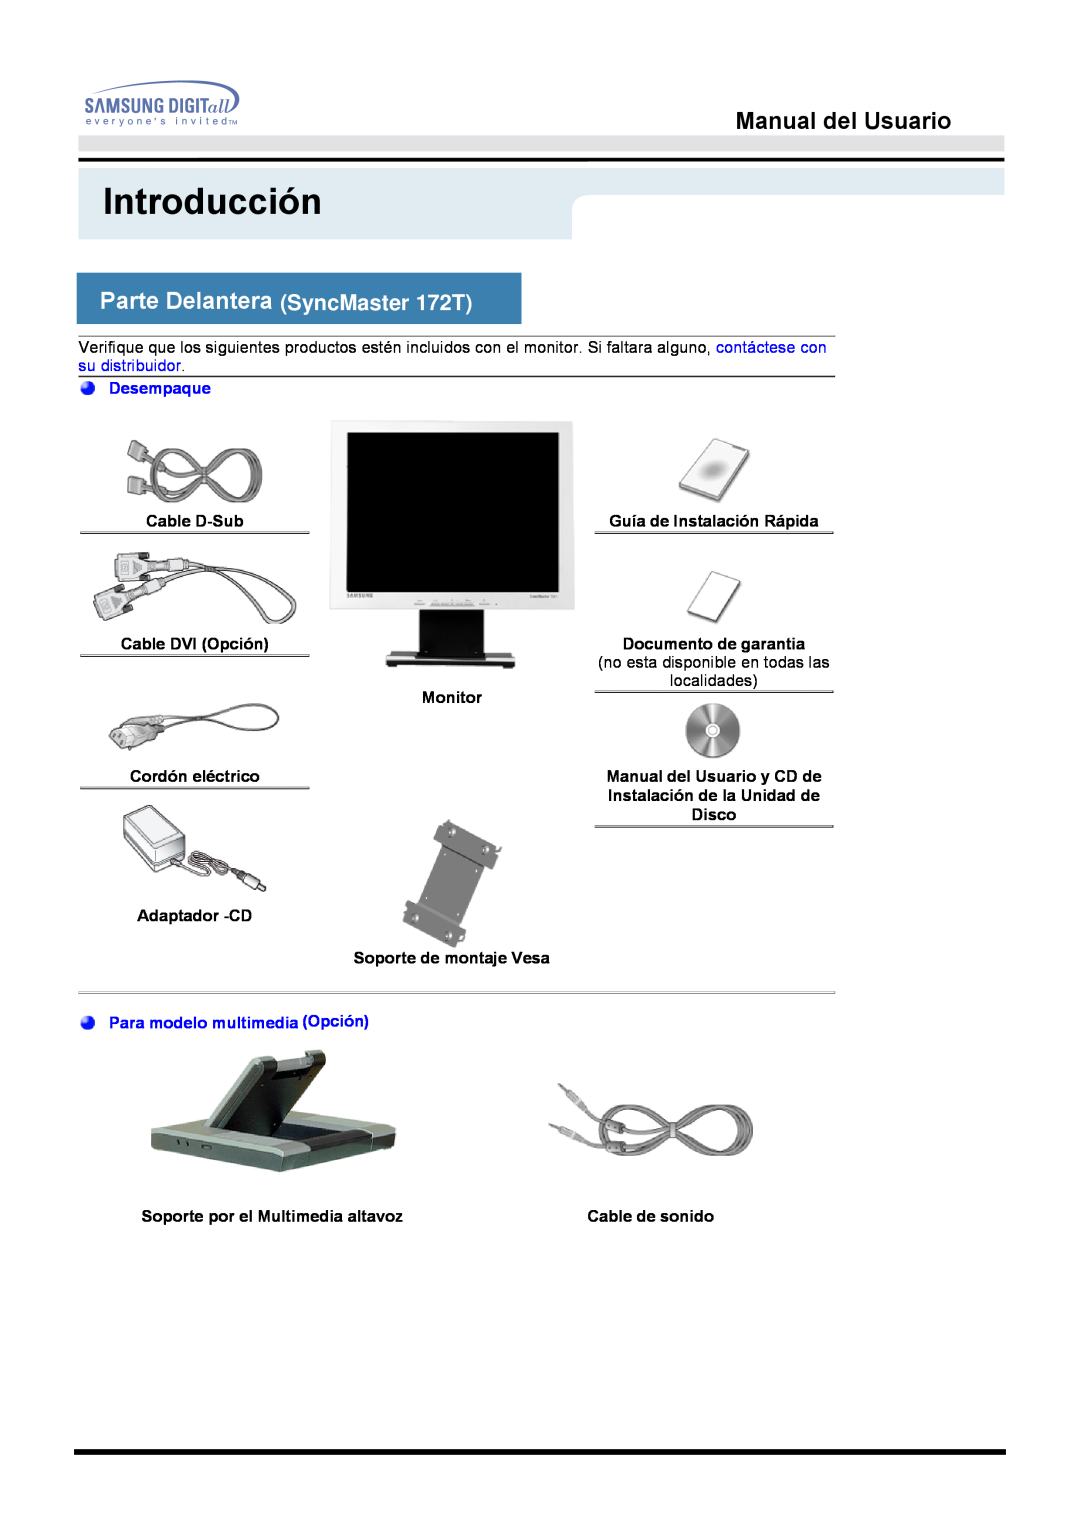 Samsung MO17ESZS/EDC Parte Delantera SyncMaster 172T, Introducción, Manual del Usuario, Desempaque, Cable D-Sub, Monitor 